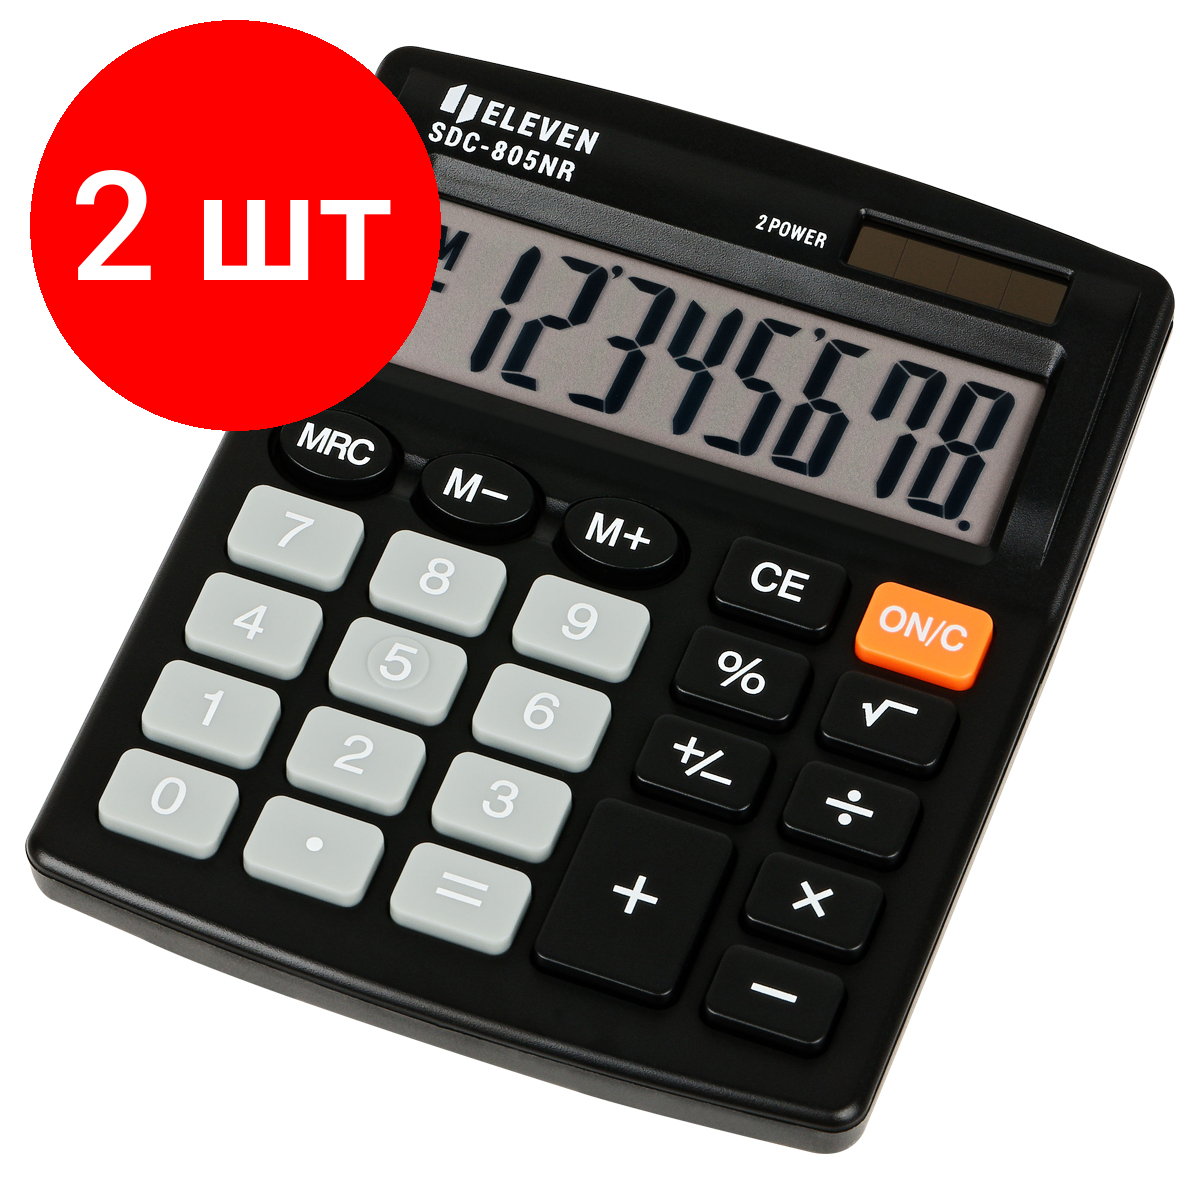 Комплект 2 шт, Калькулятор настольный Eleven SDC-805NR, 8 разр, двойное питание, 127*105*21мм, черный